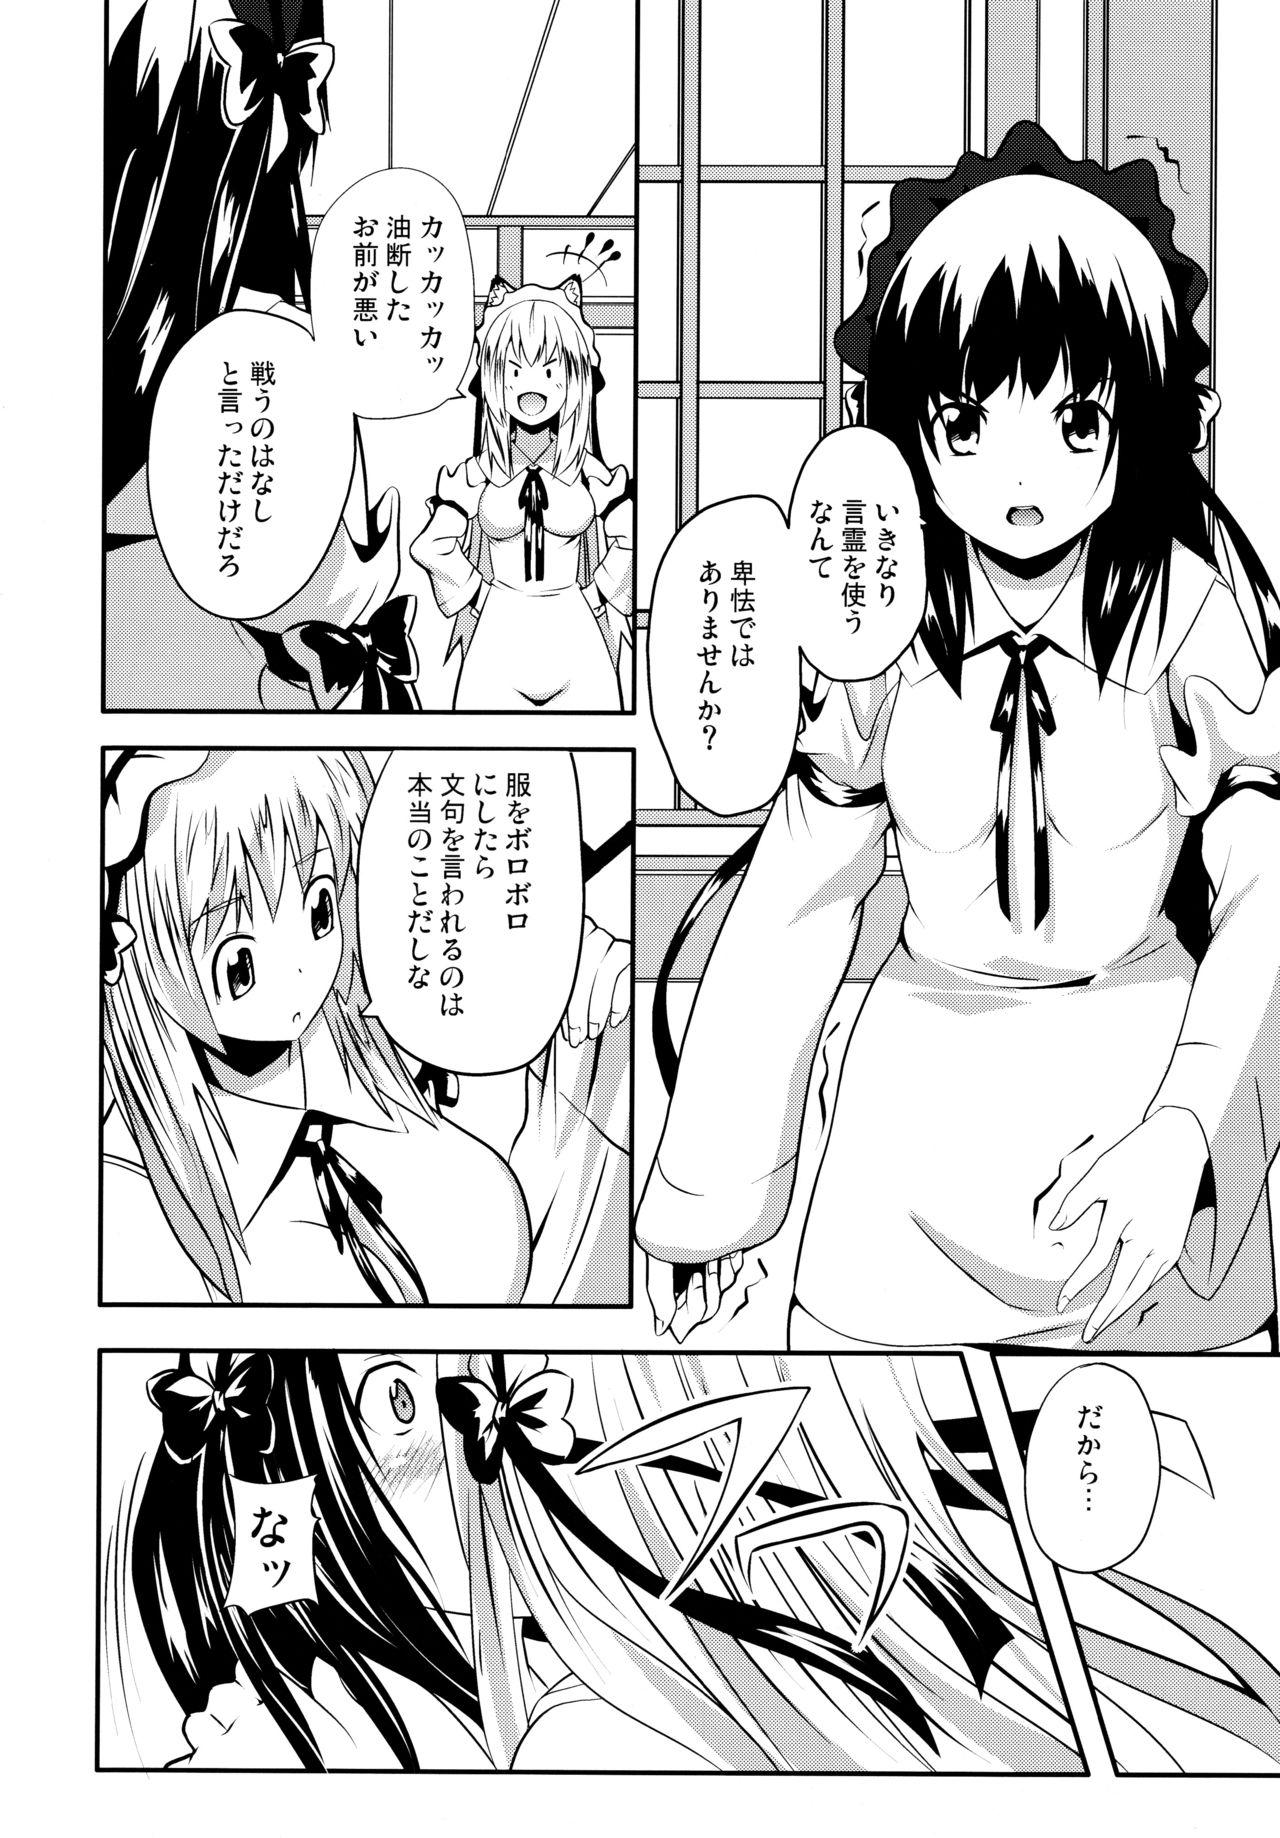 Leather Hare, Tokidoki Oinari-sama 4 - Wagaya no oinari sama Verification - Page 10